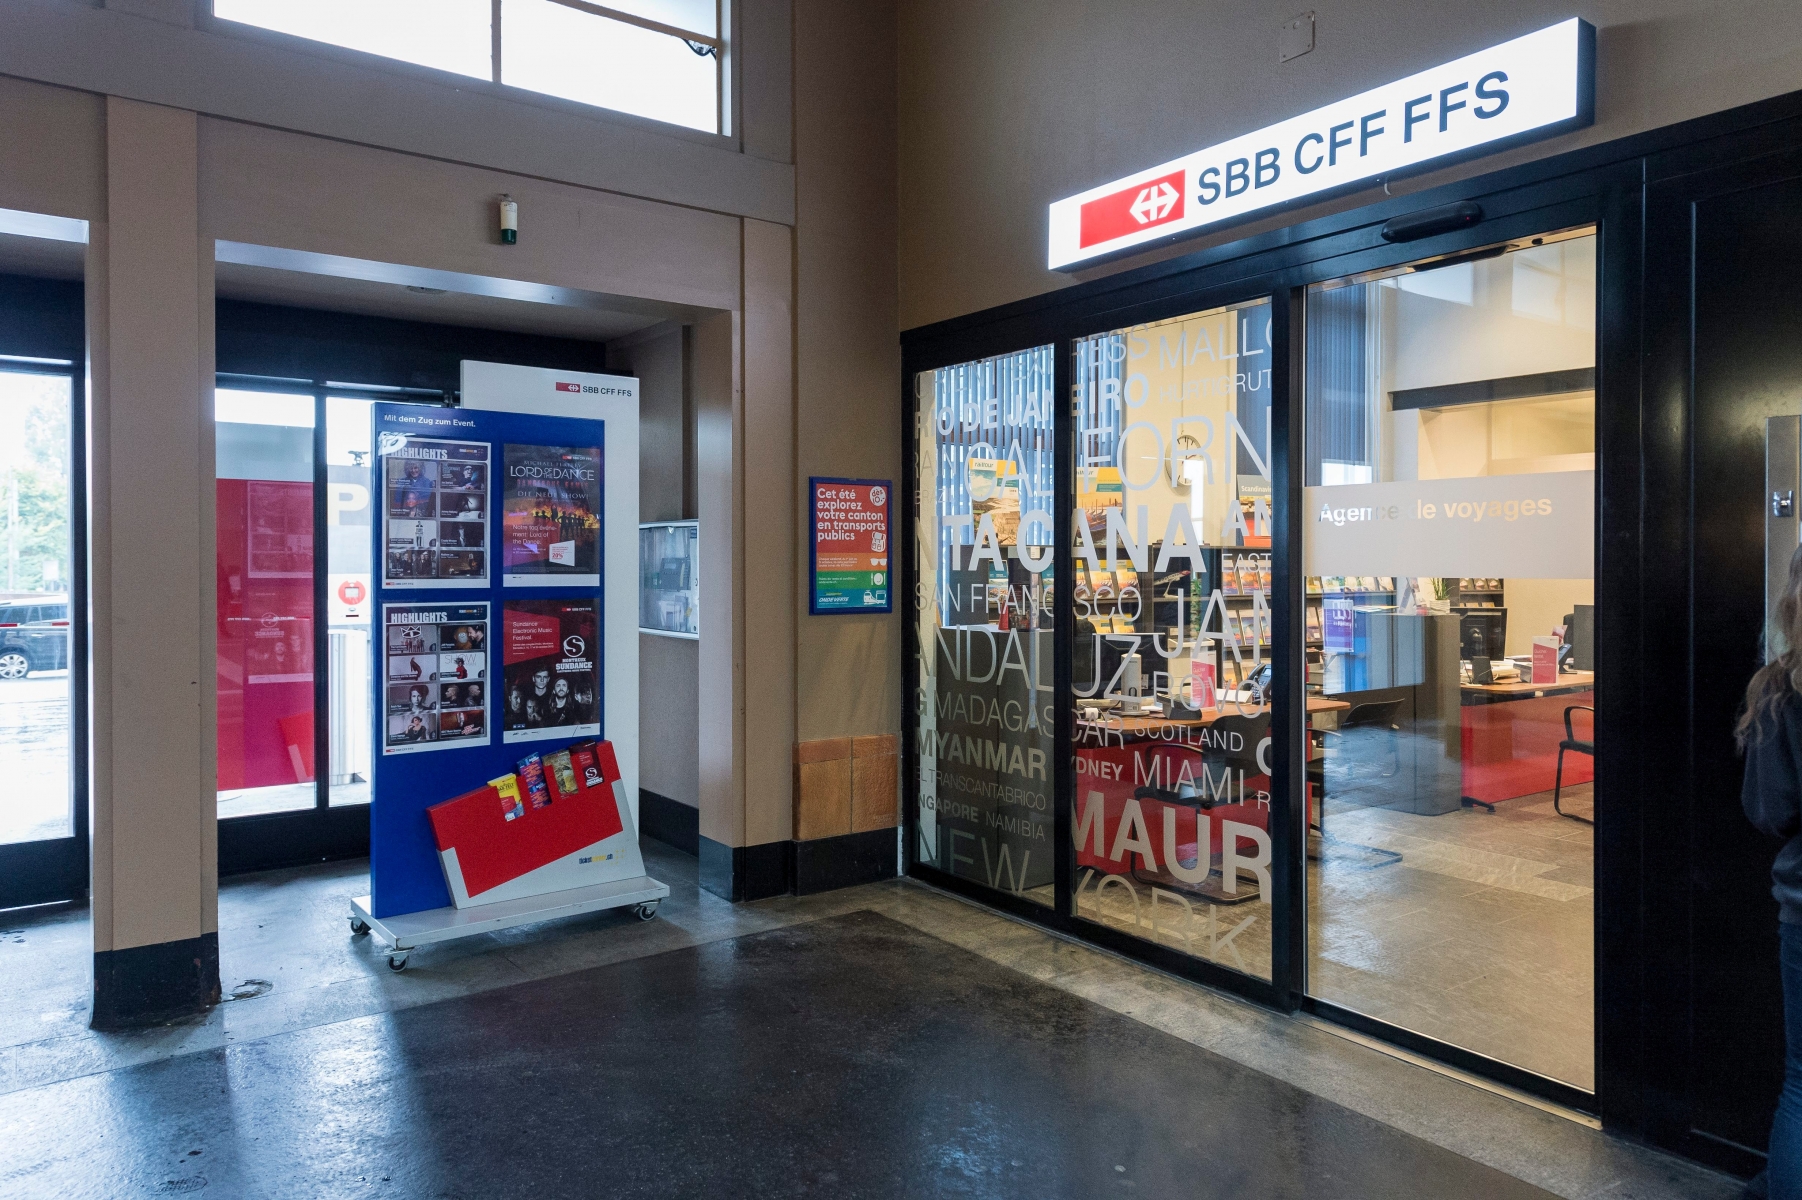 L'agence de voyage CFF a la gare de Neuchatel va fermer ses portes.



Neuchatel, le 06.10.2015



Photo : Lucas Vuitel